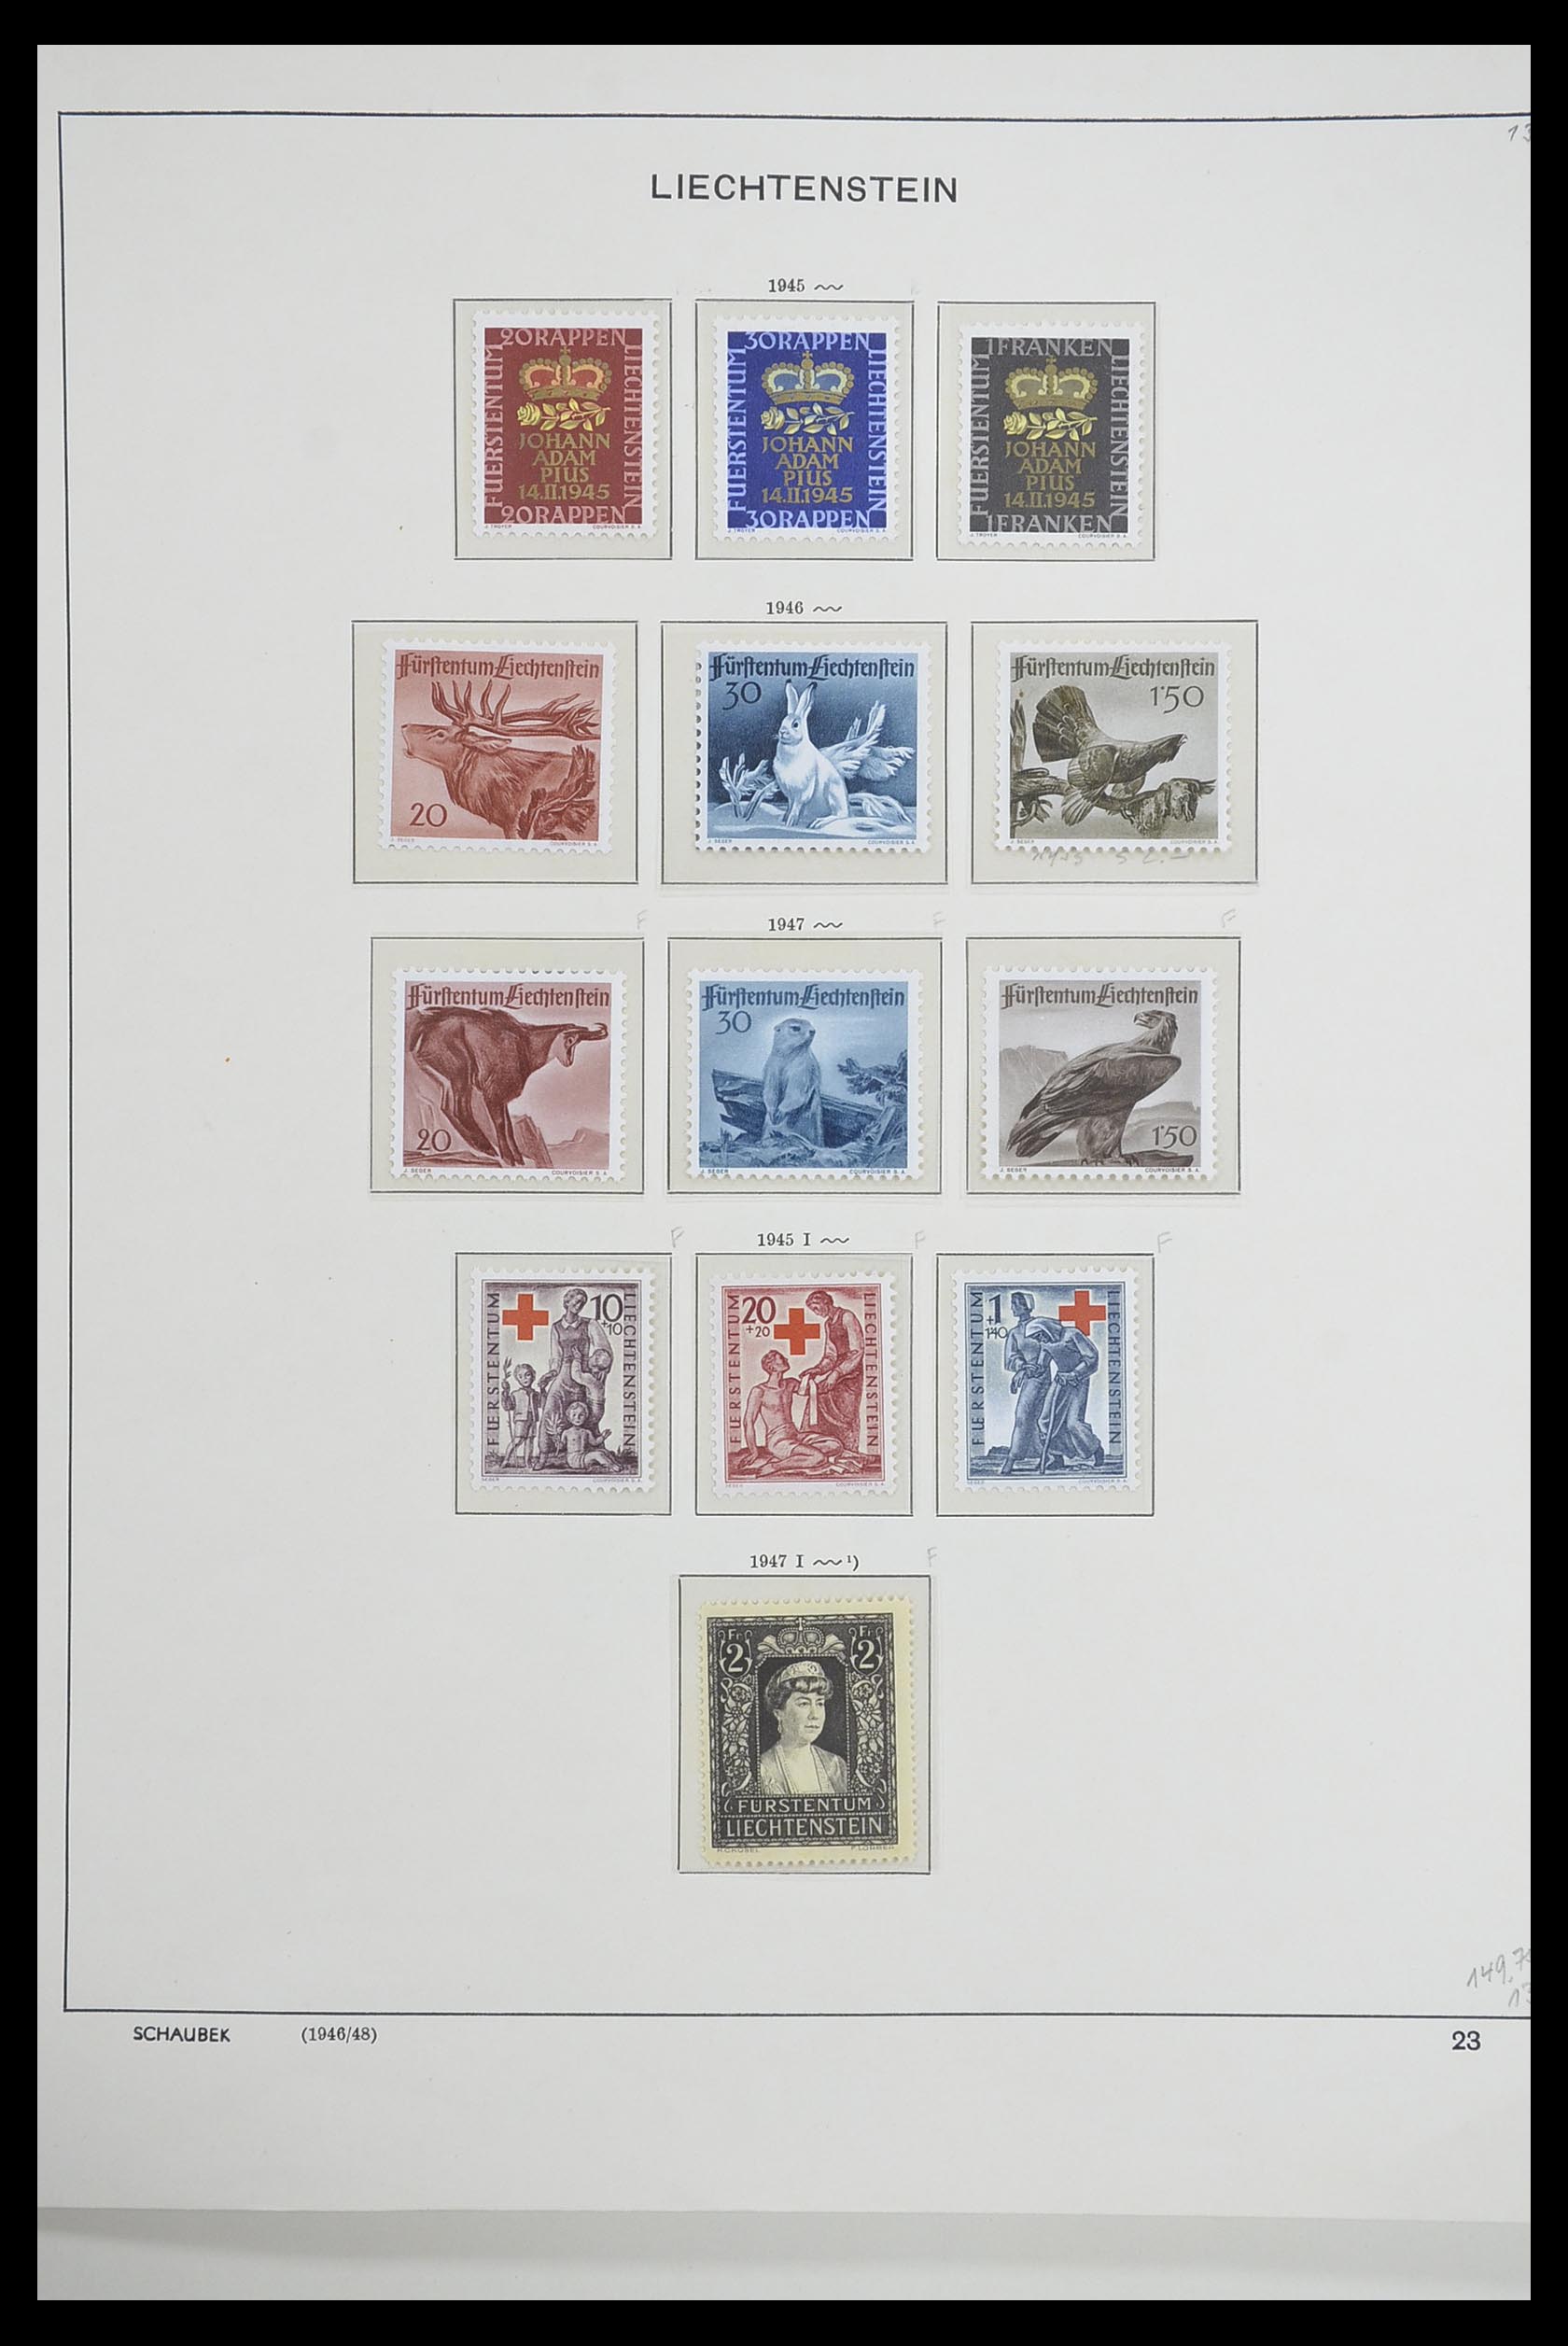 33274 022 - Stamp collection 33274 Liechtenstein 1912-1996.